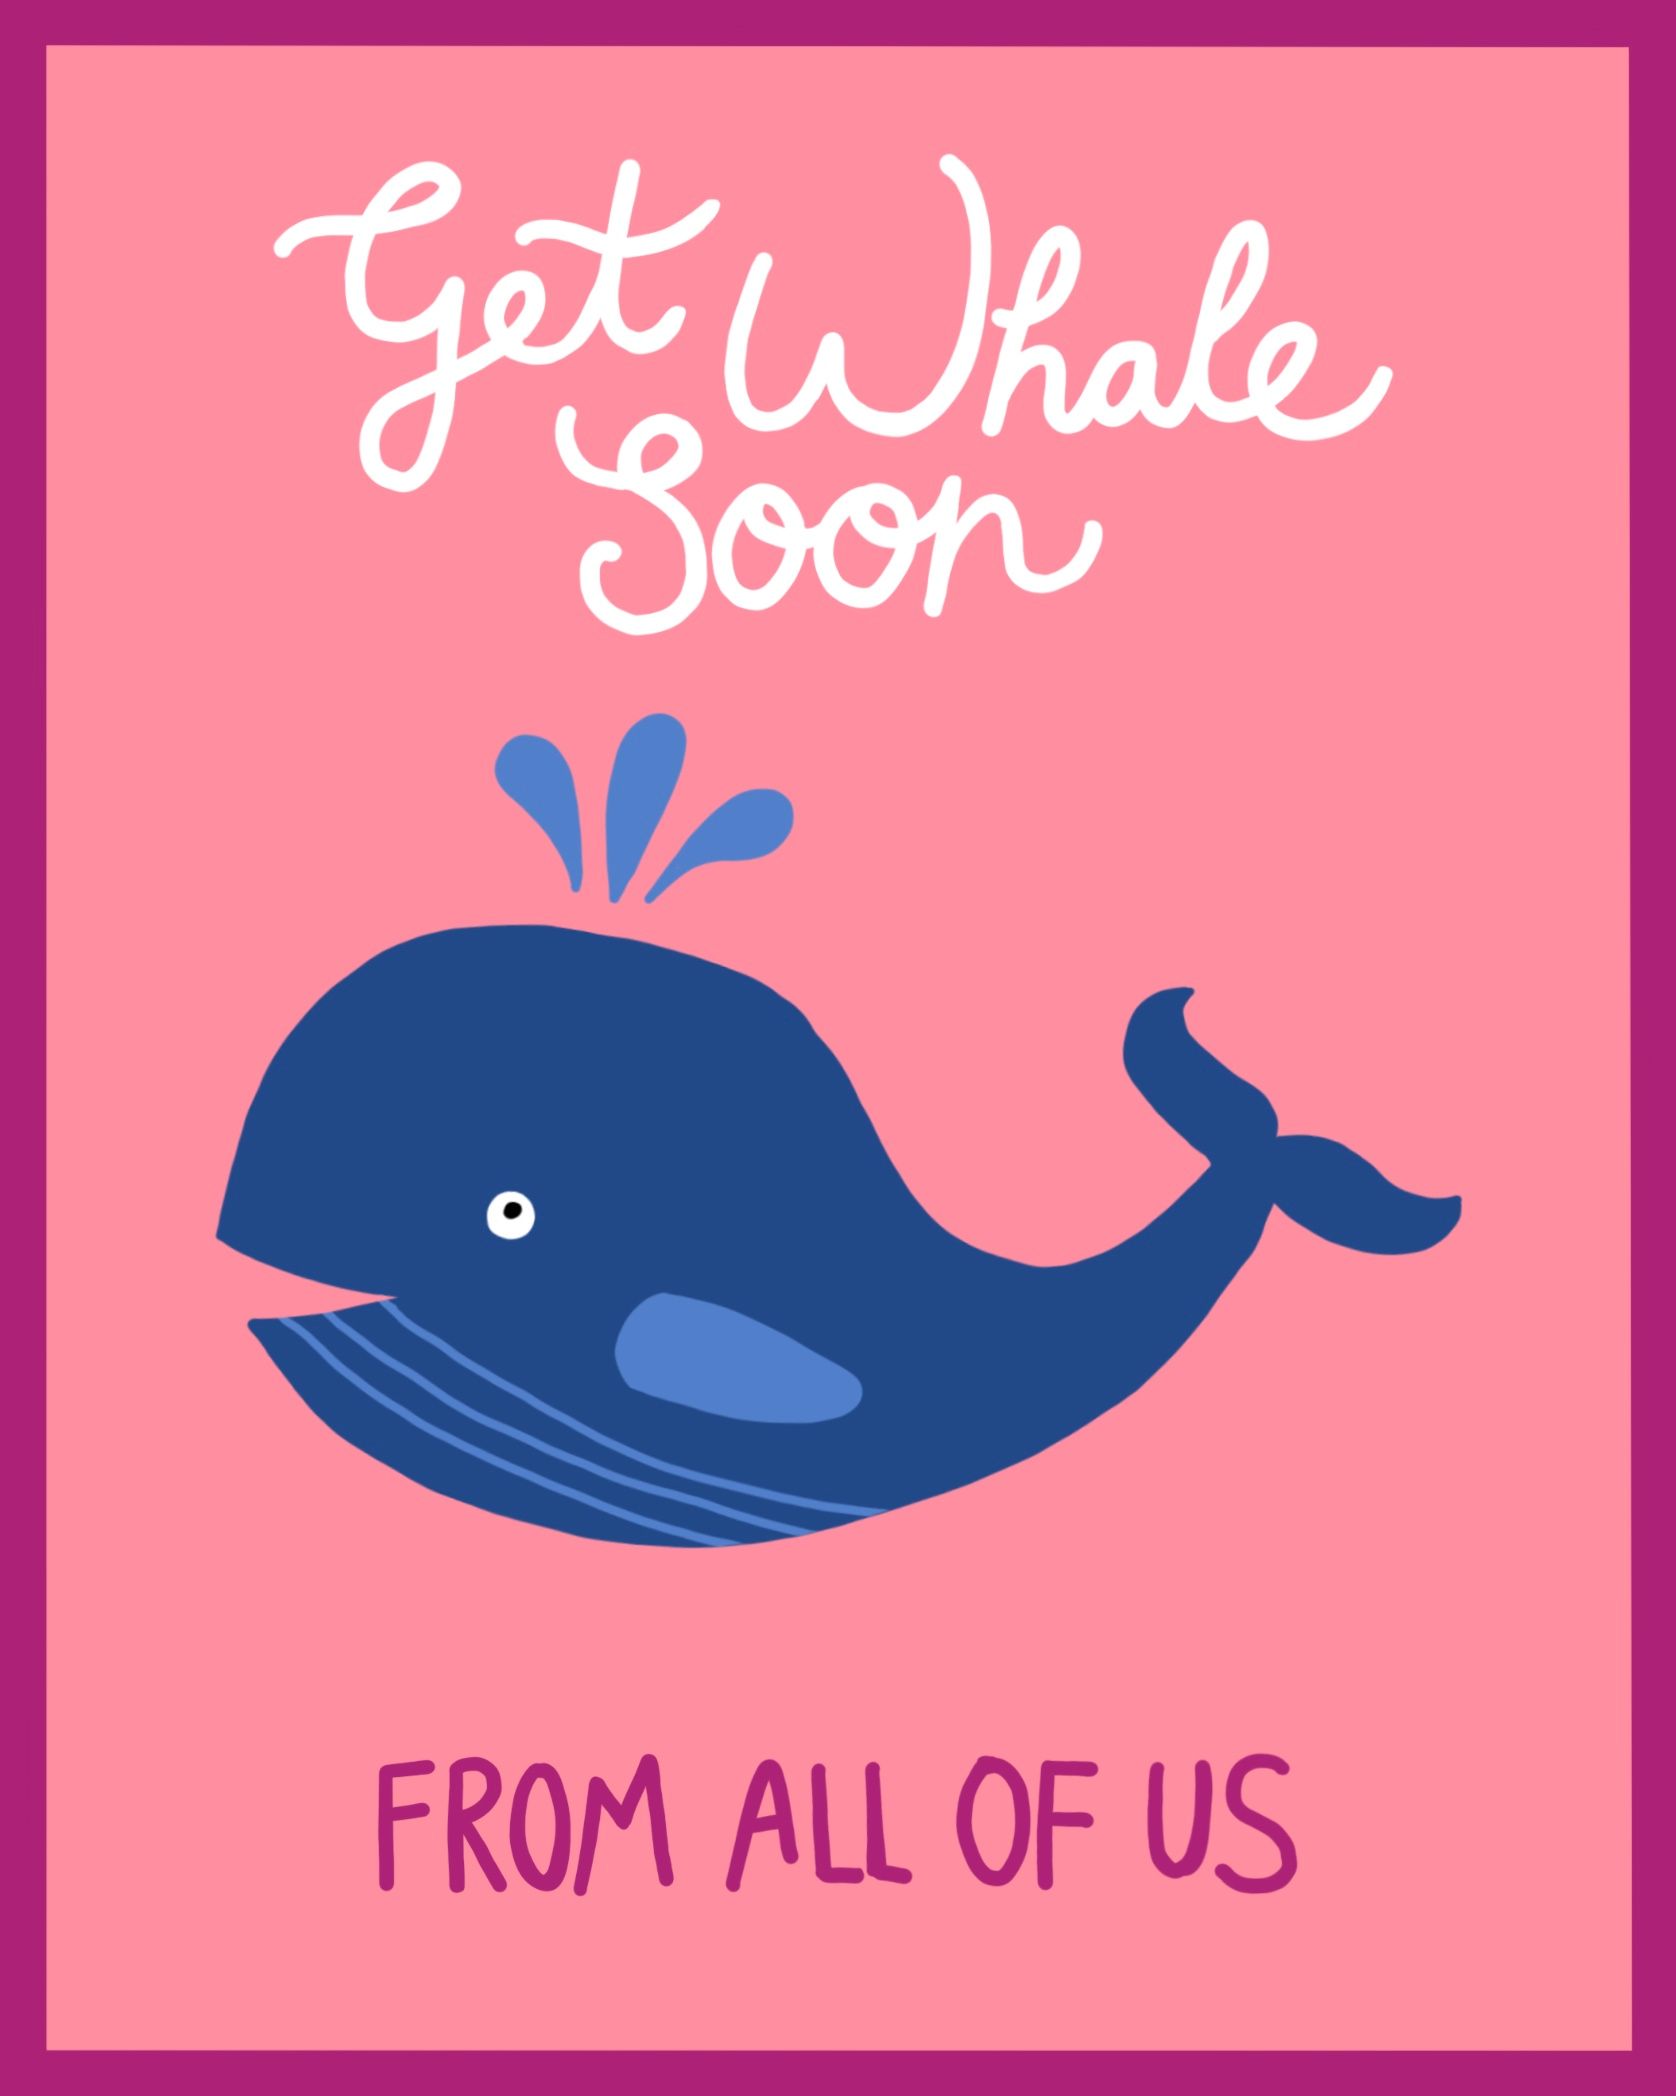 Card design "get whale soon"